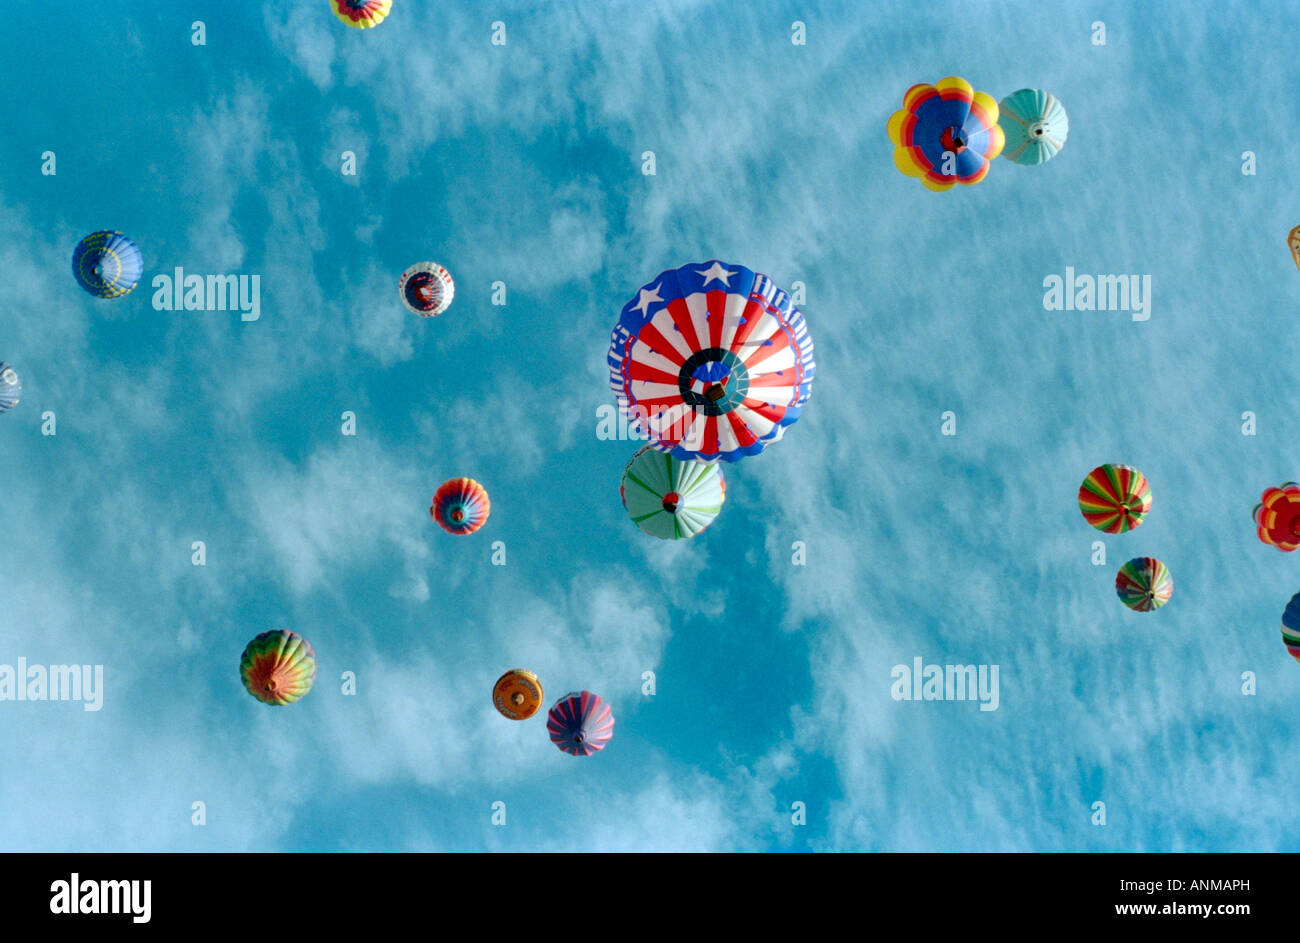 Eine Gruppe von Heißluftballons in einem blauen Himmel Stockfoto